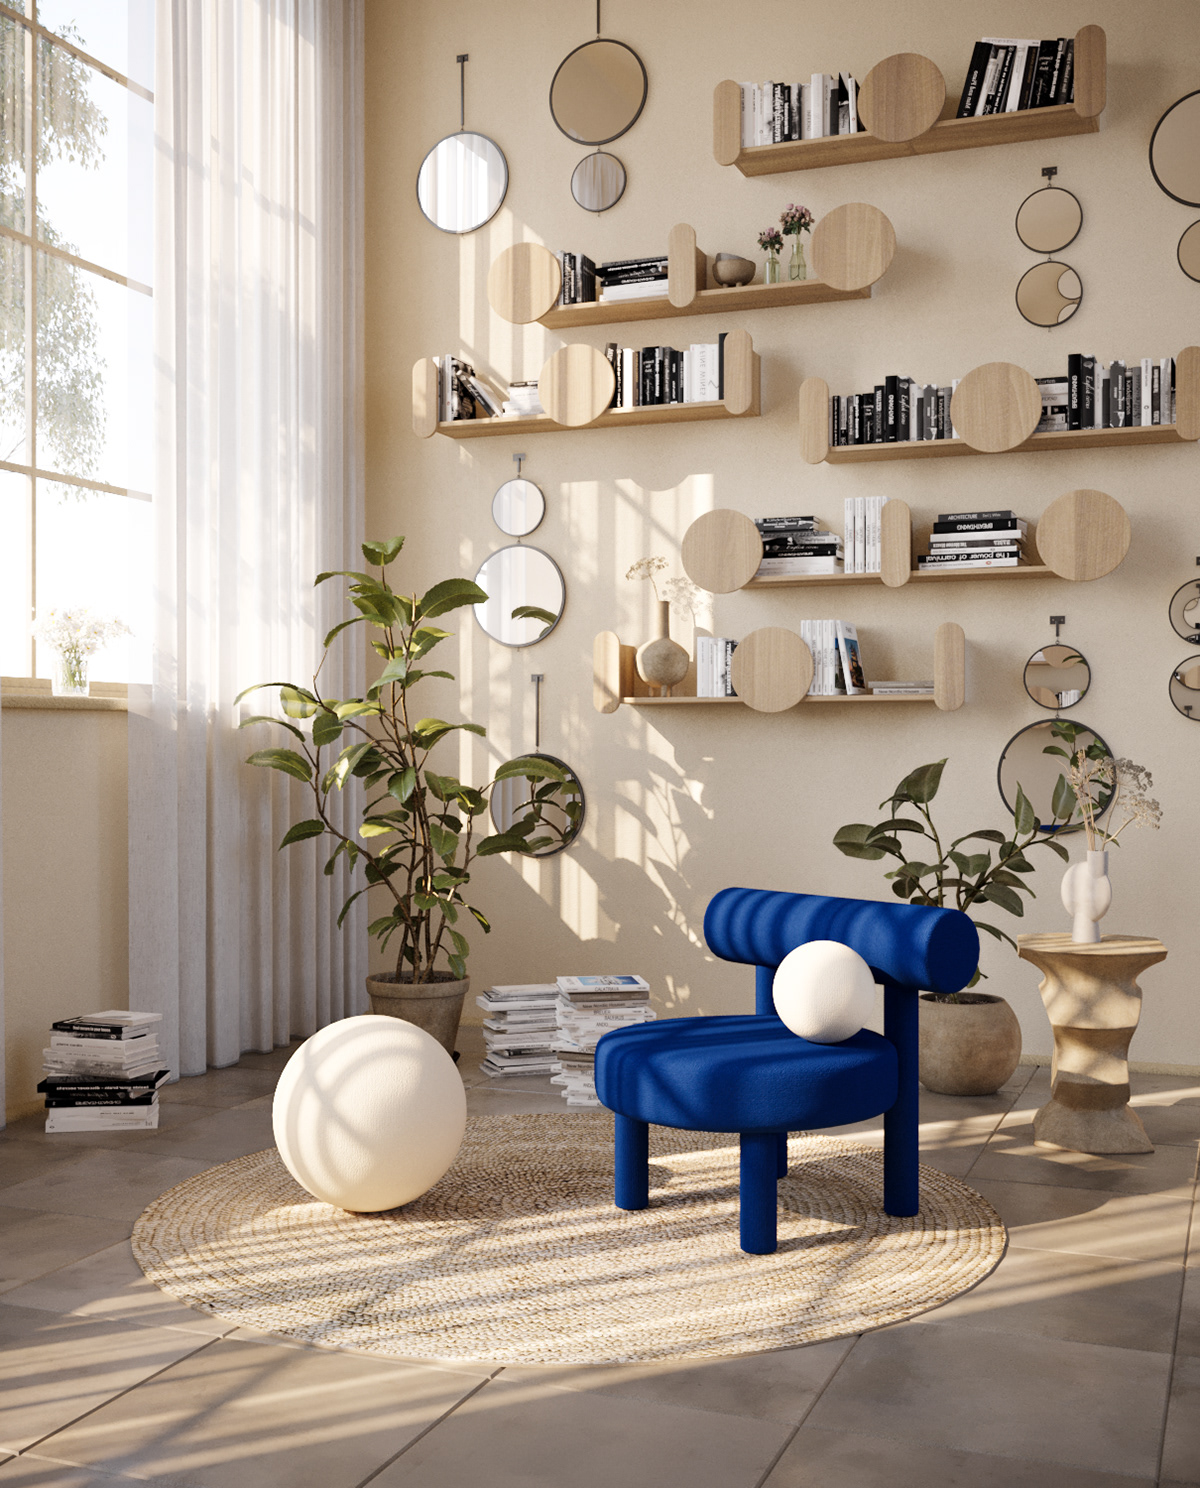 3D 3dsmax architecture CGI furnituredesign Interior interiordesign livingroom rendering visualization